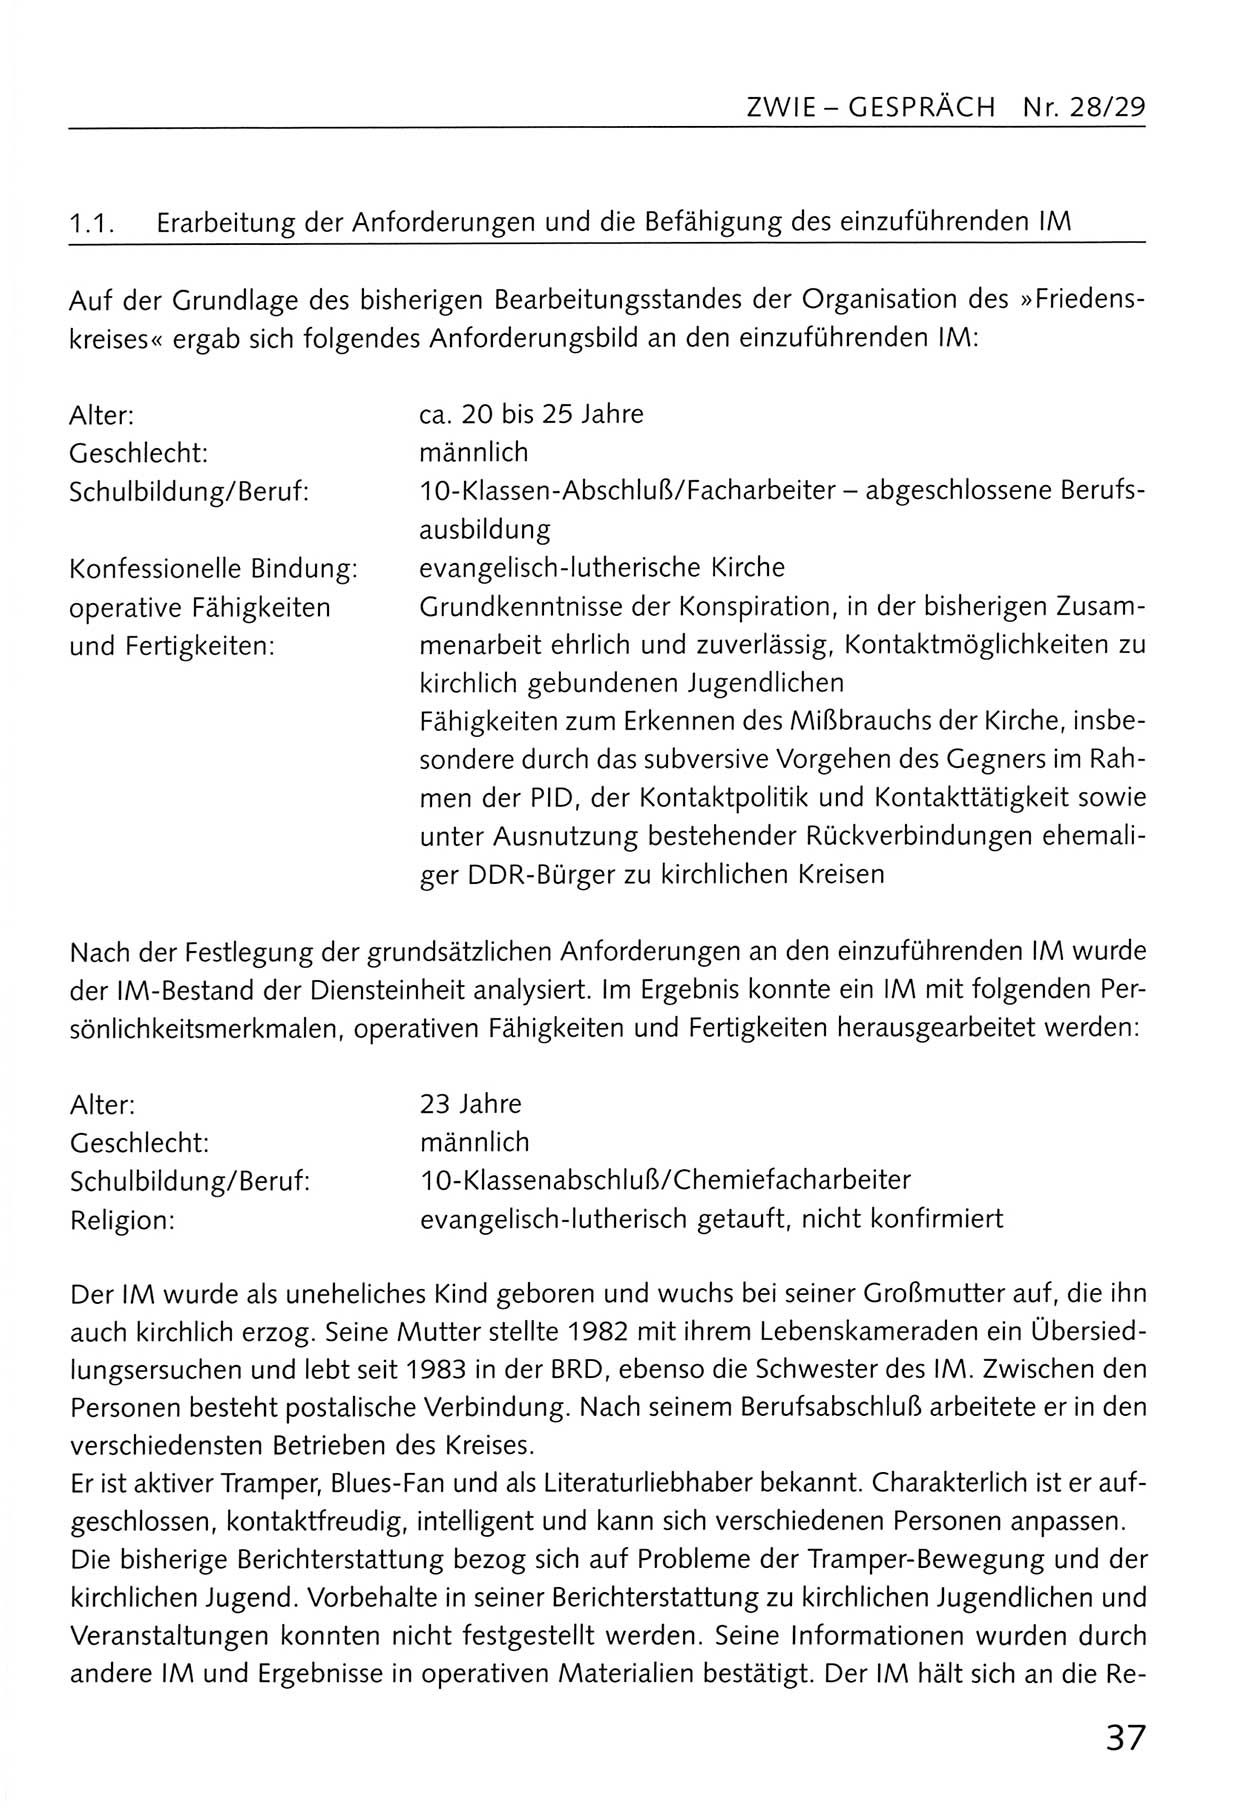 Zwie-Gespräch, Beiträge zum Umgang mit der Staatssicherheits-Vergangenheit [Deutsche Demokratische Republik (DDR)], Ausgabe Nr. 28/29, Berlin 1995, Seite 37 (Zwie-Gespr. Ausg. 28/29 1995, S. 37)